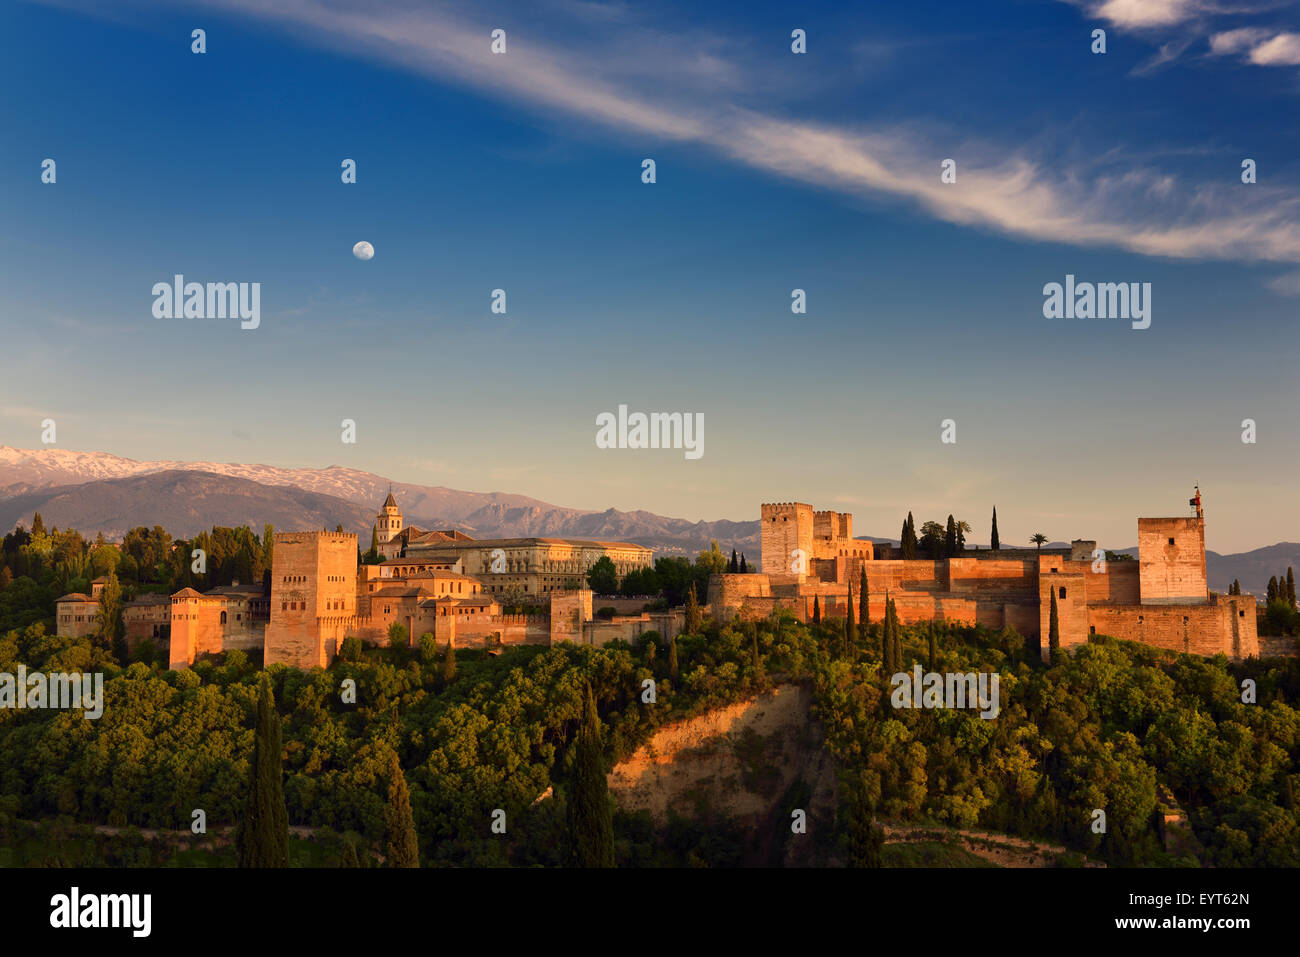 Mond und goldenen Sonnenuntergang auf Hügel Festung Alhambra Palast Komplex Granada Spanien mit Schnee bedeckt Sierra-Nevada-Berge Stockfoto